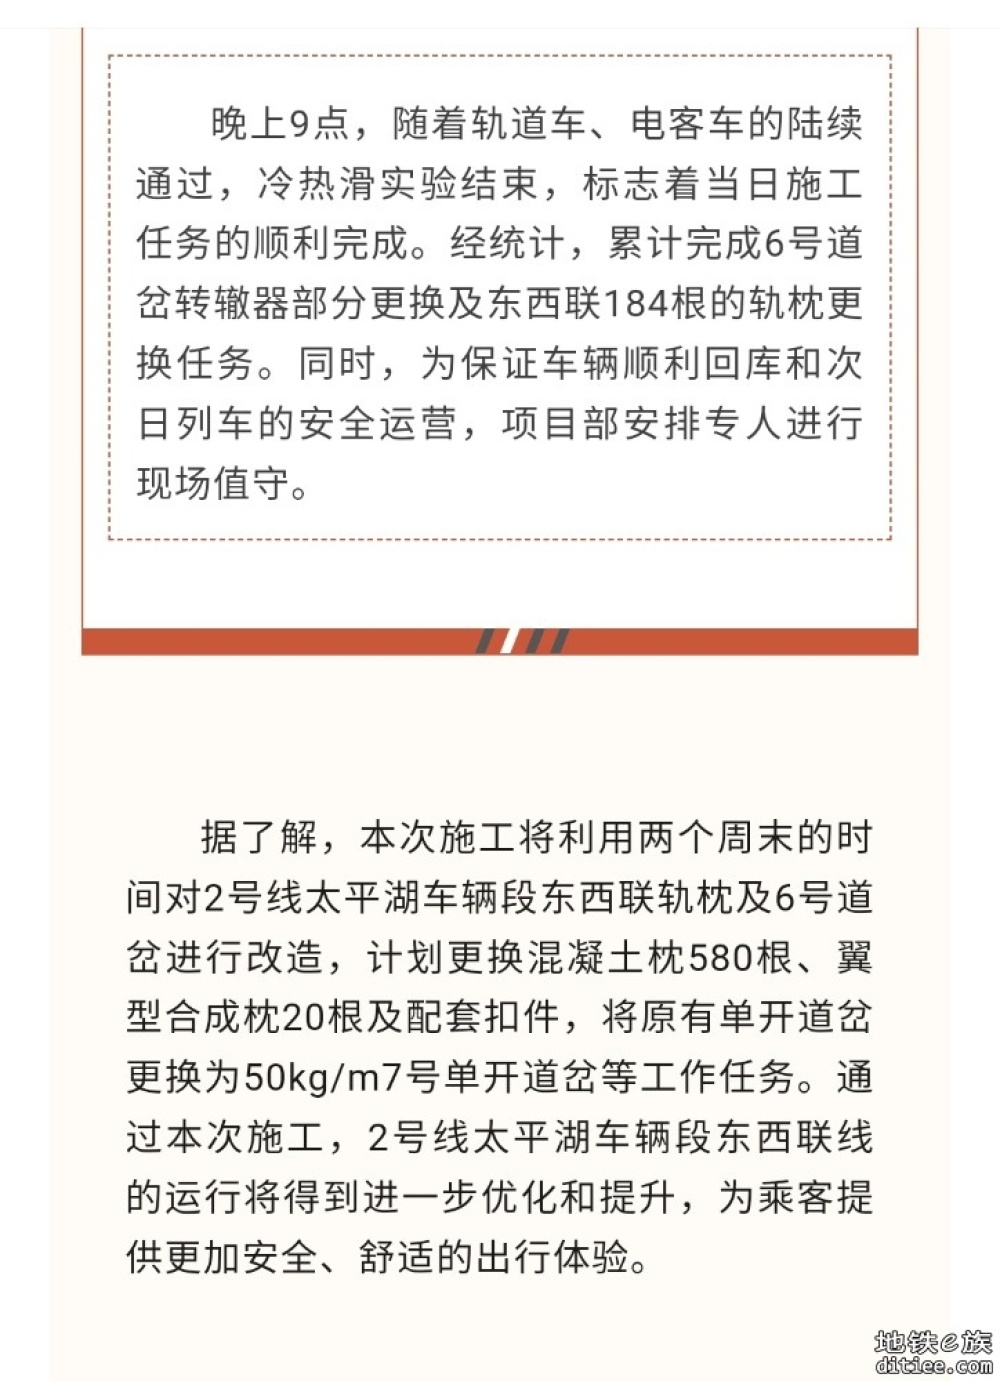 北京地铁2号线太平湖车辆段东西联线轨枕更换施工启动